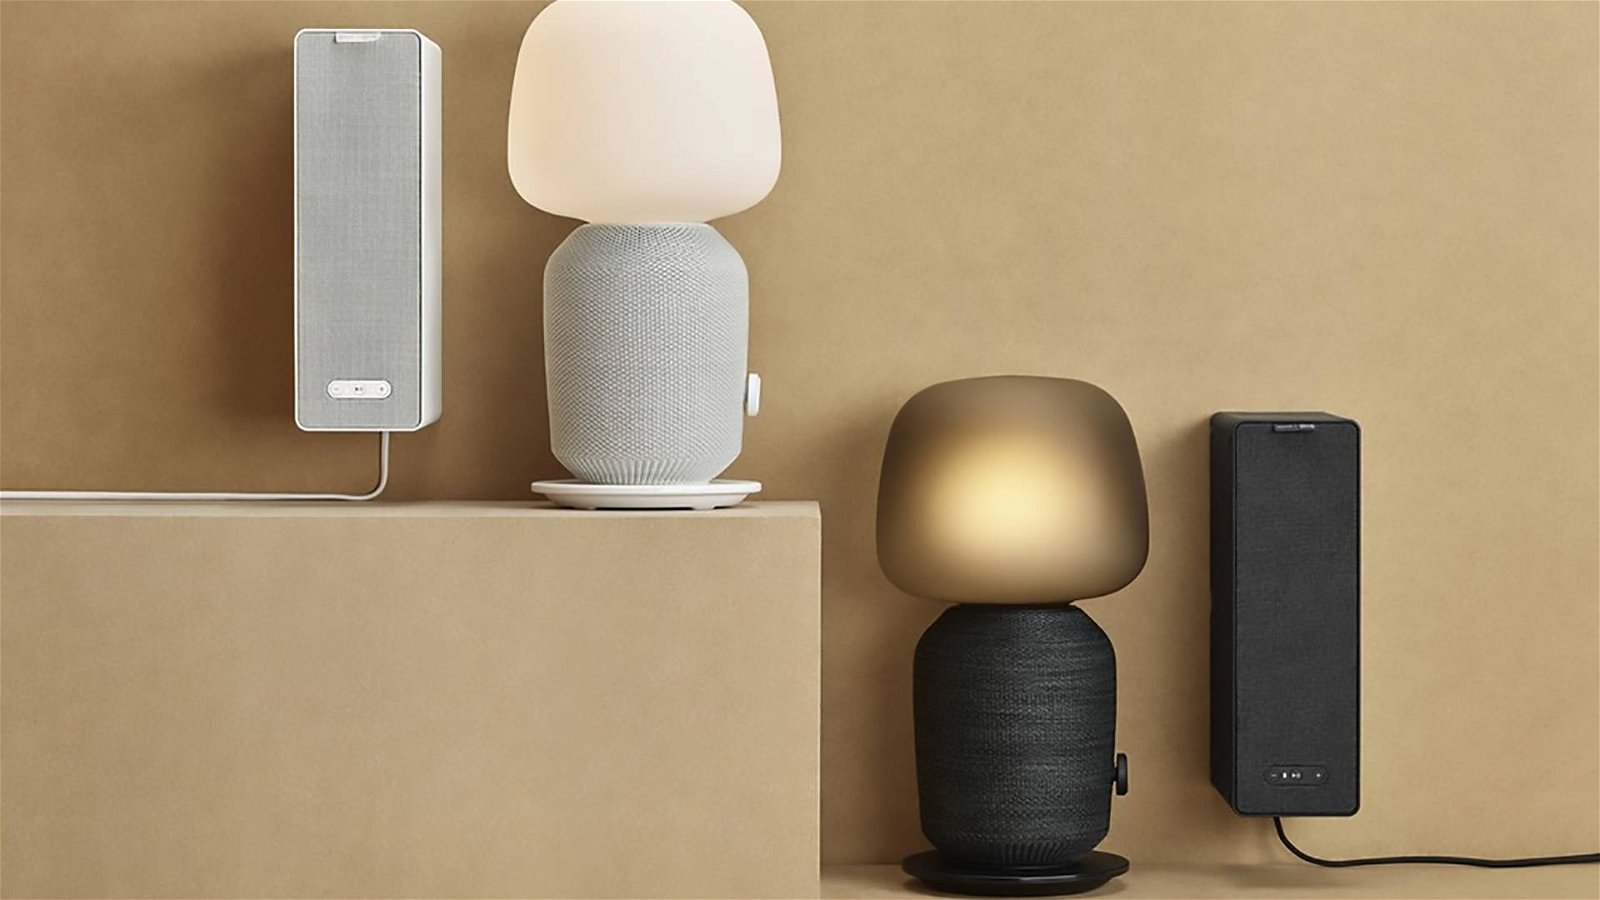 Immagine di Symfonisk, la lampada con smart speaker integrato creata da IKEA e Sonos